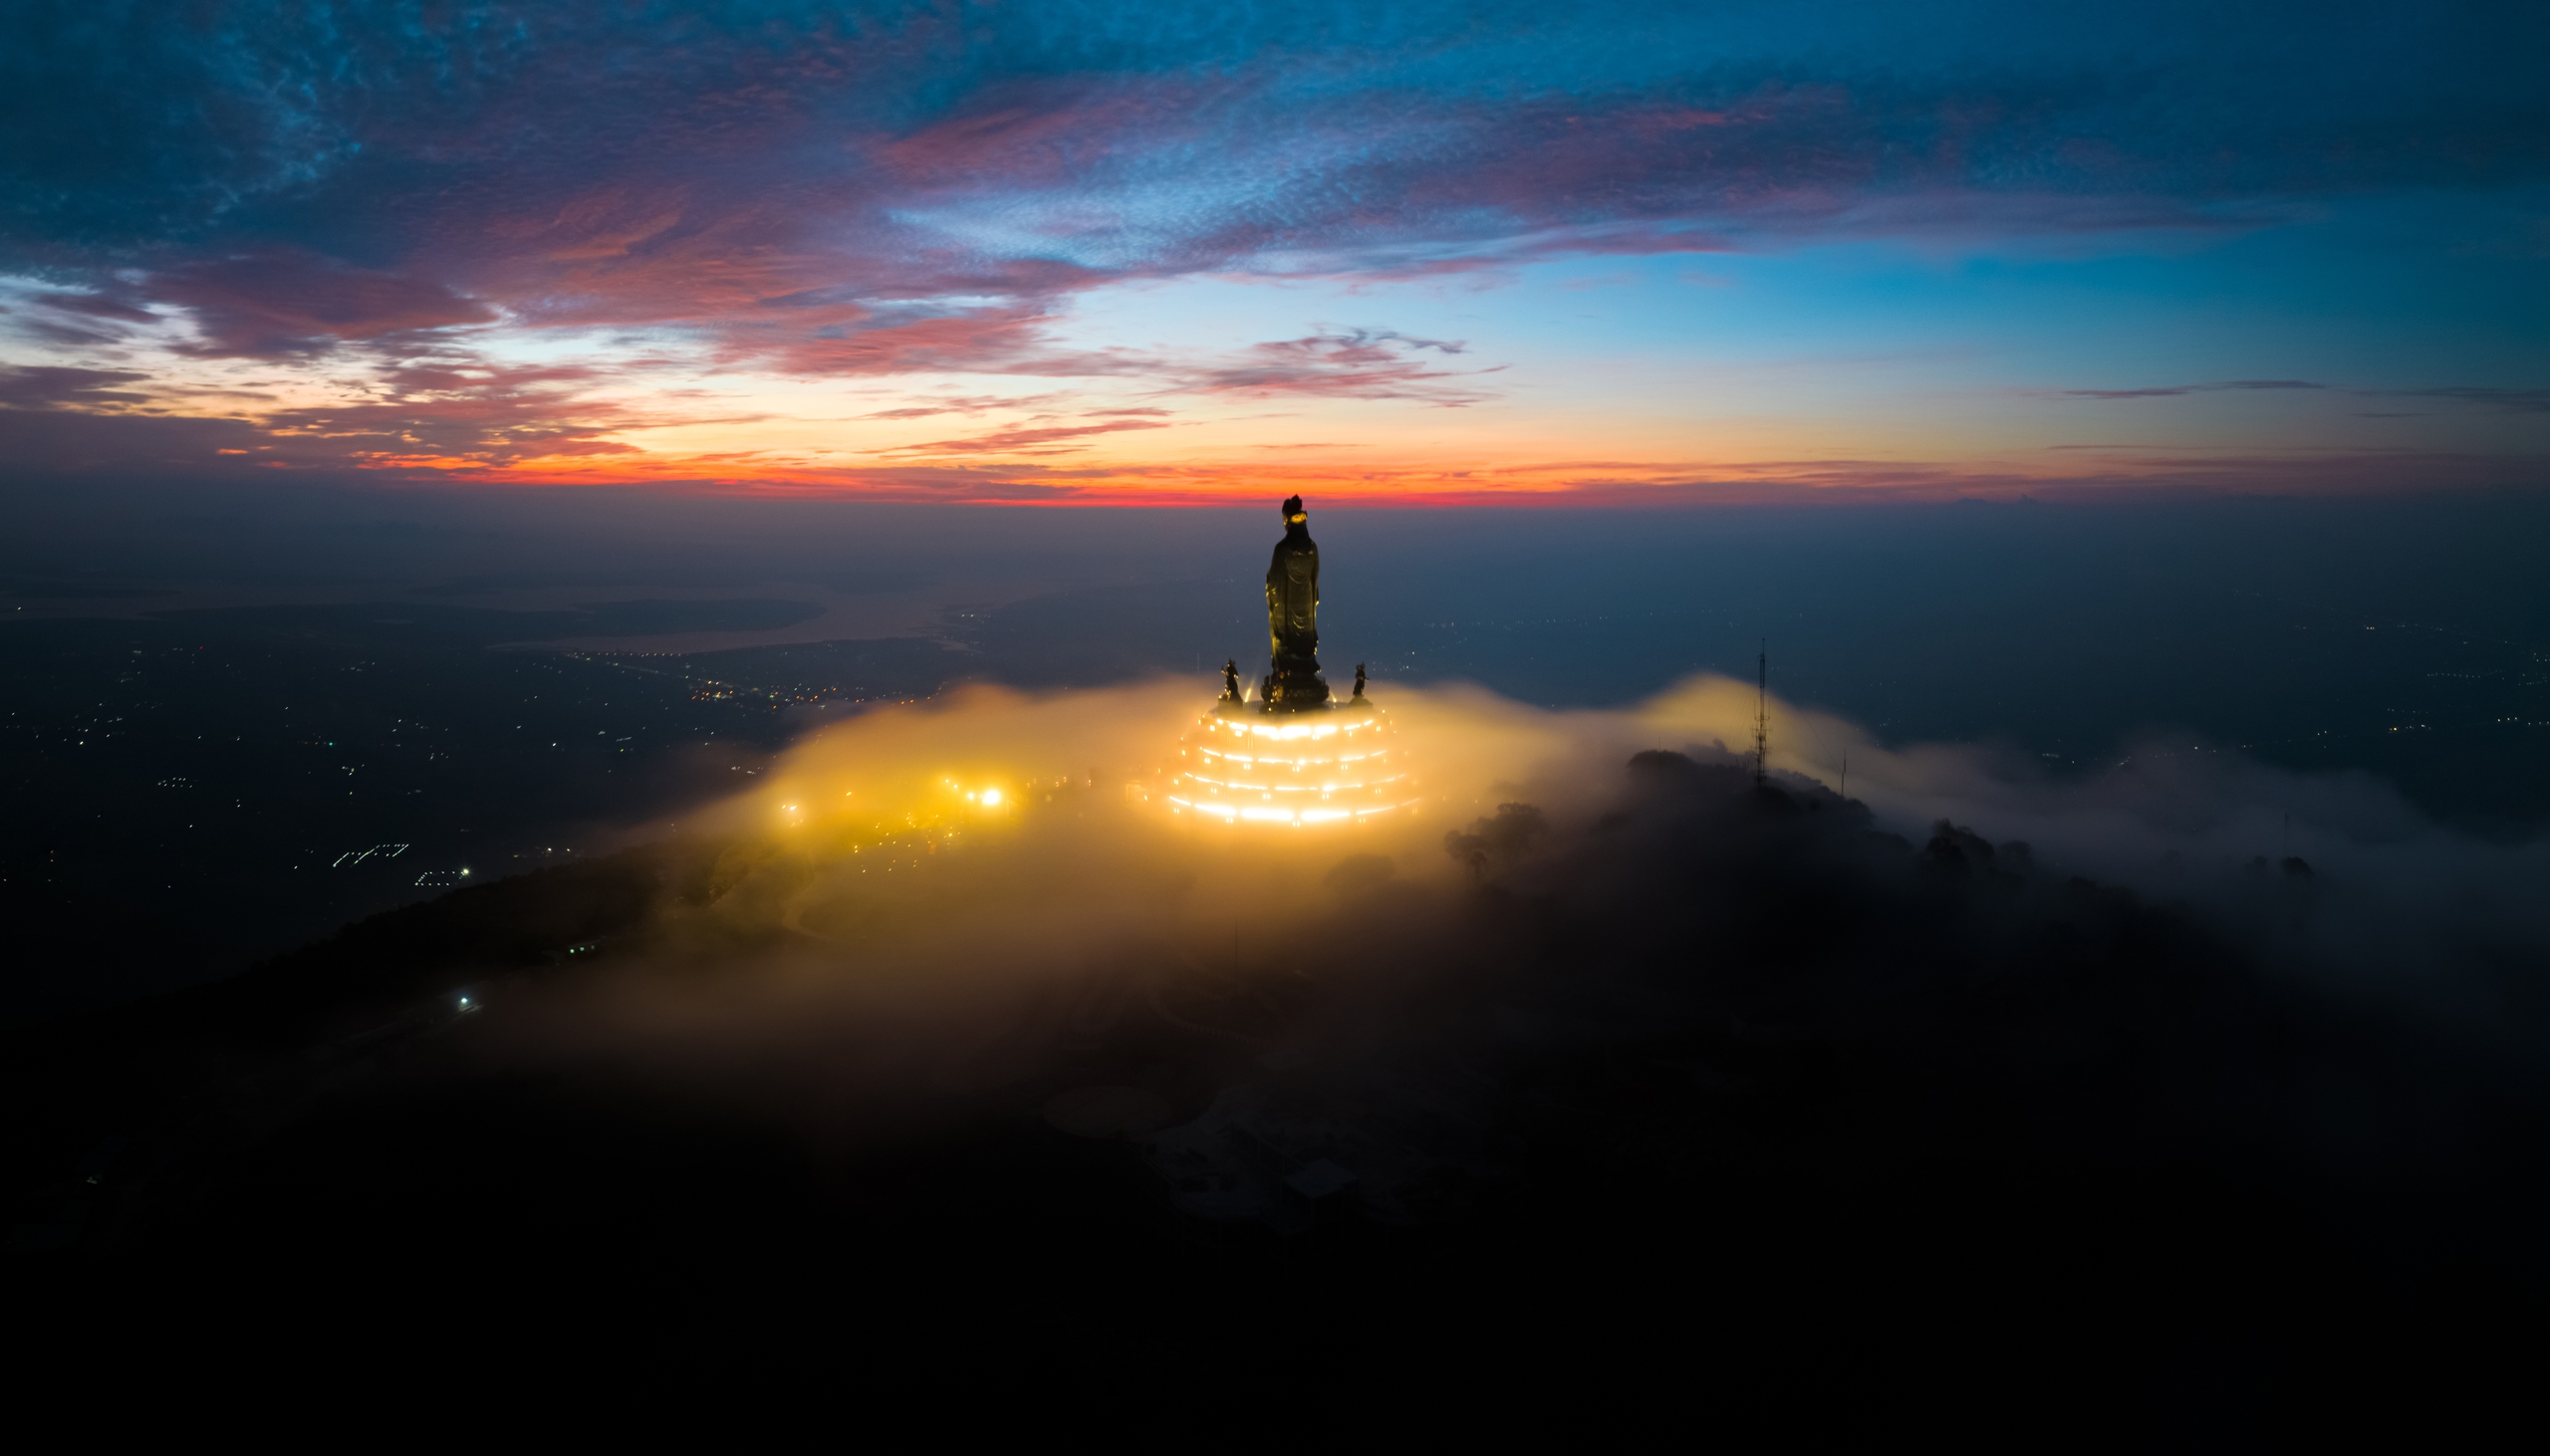 Săn mây núi Bà vào buổi tối cũng là một trải nghiệm rất độc đáo và hiếm lạ. Khi hàng ngàn ánh đèn được thắp sáng trên đỉnh núi, mây bám trên triền núi và vờn quanh quảng trường dưới chân tượng Phật Bà Tây Bổ Đà Sơn tạo không gian vô cùng ảo diệu